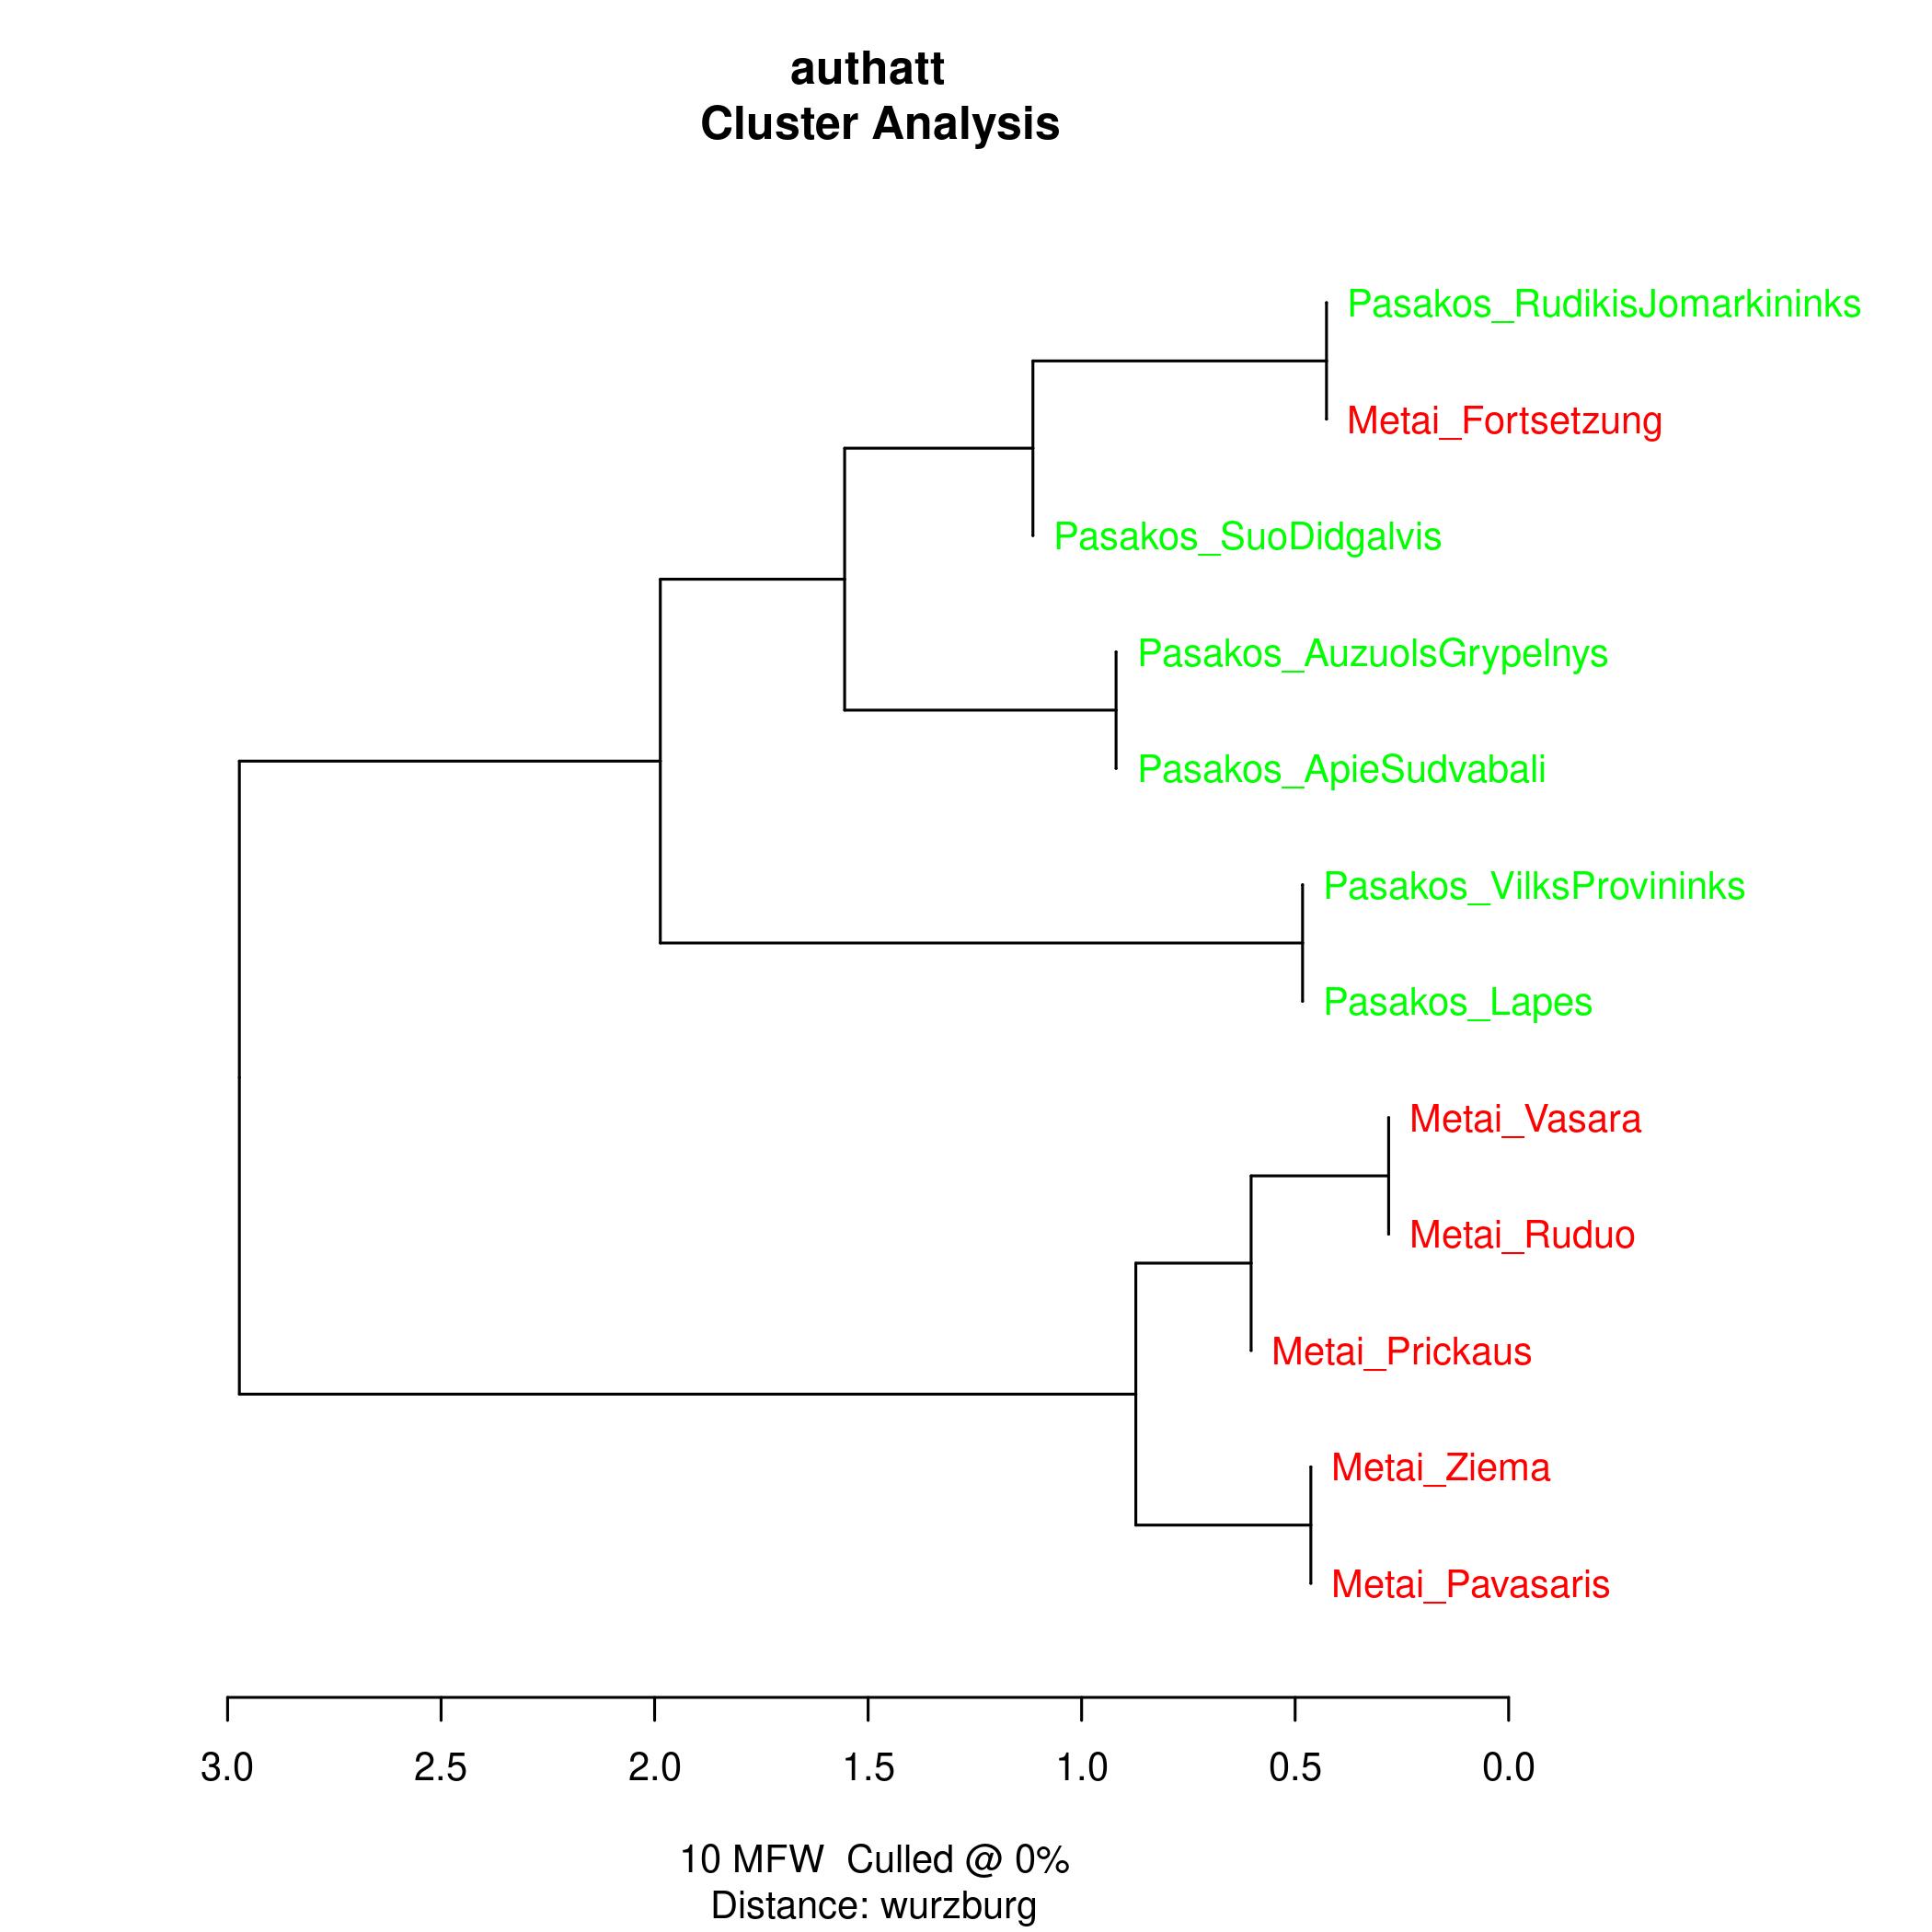 Clusterbaum der CorDontexte, 10 häufigste Wörter, 2 große Cluster, Metai und Pasakos, die Metai-Fortsetzung clustert allerdings mit den Pasakos